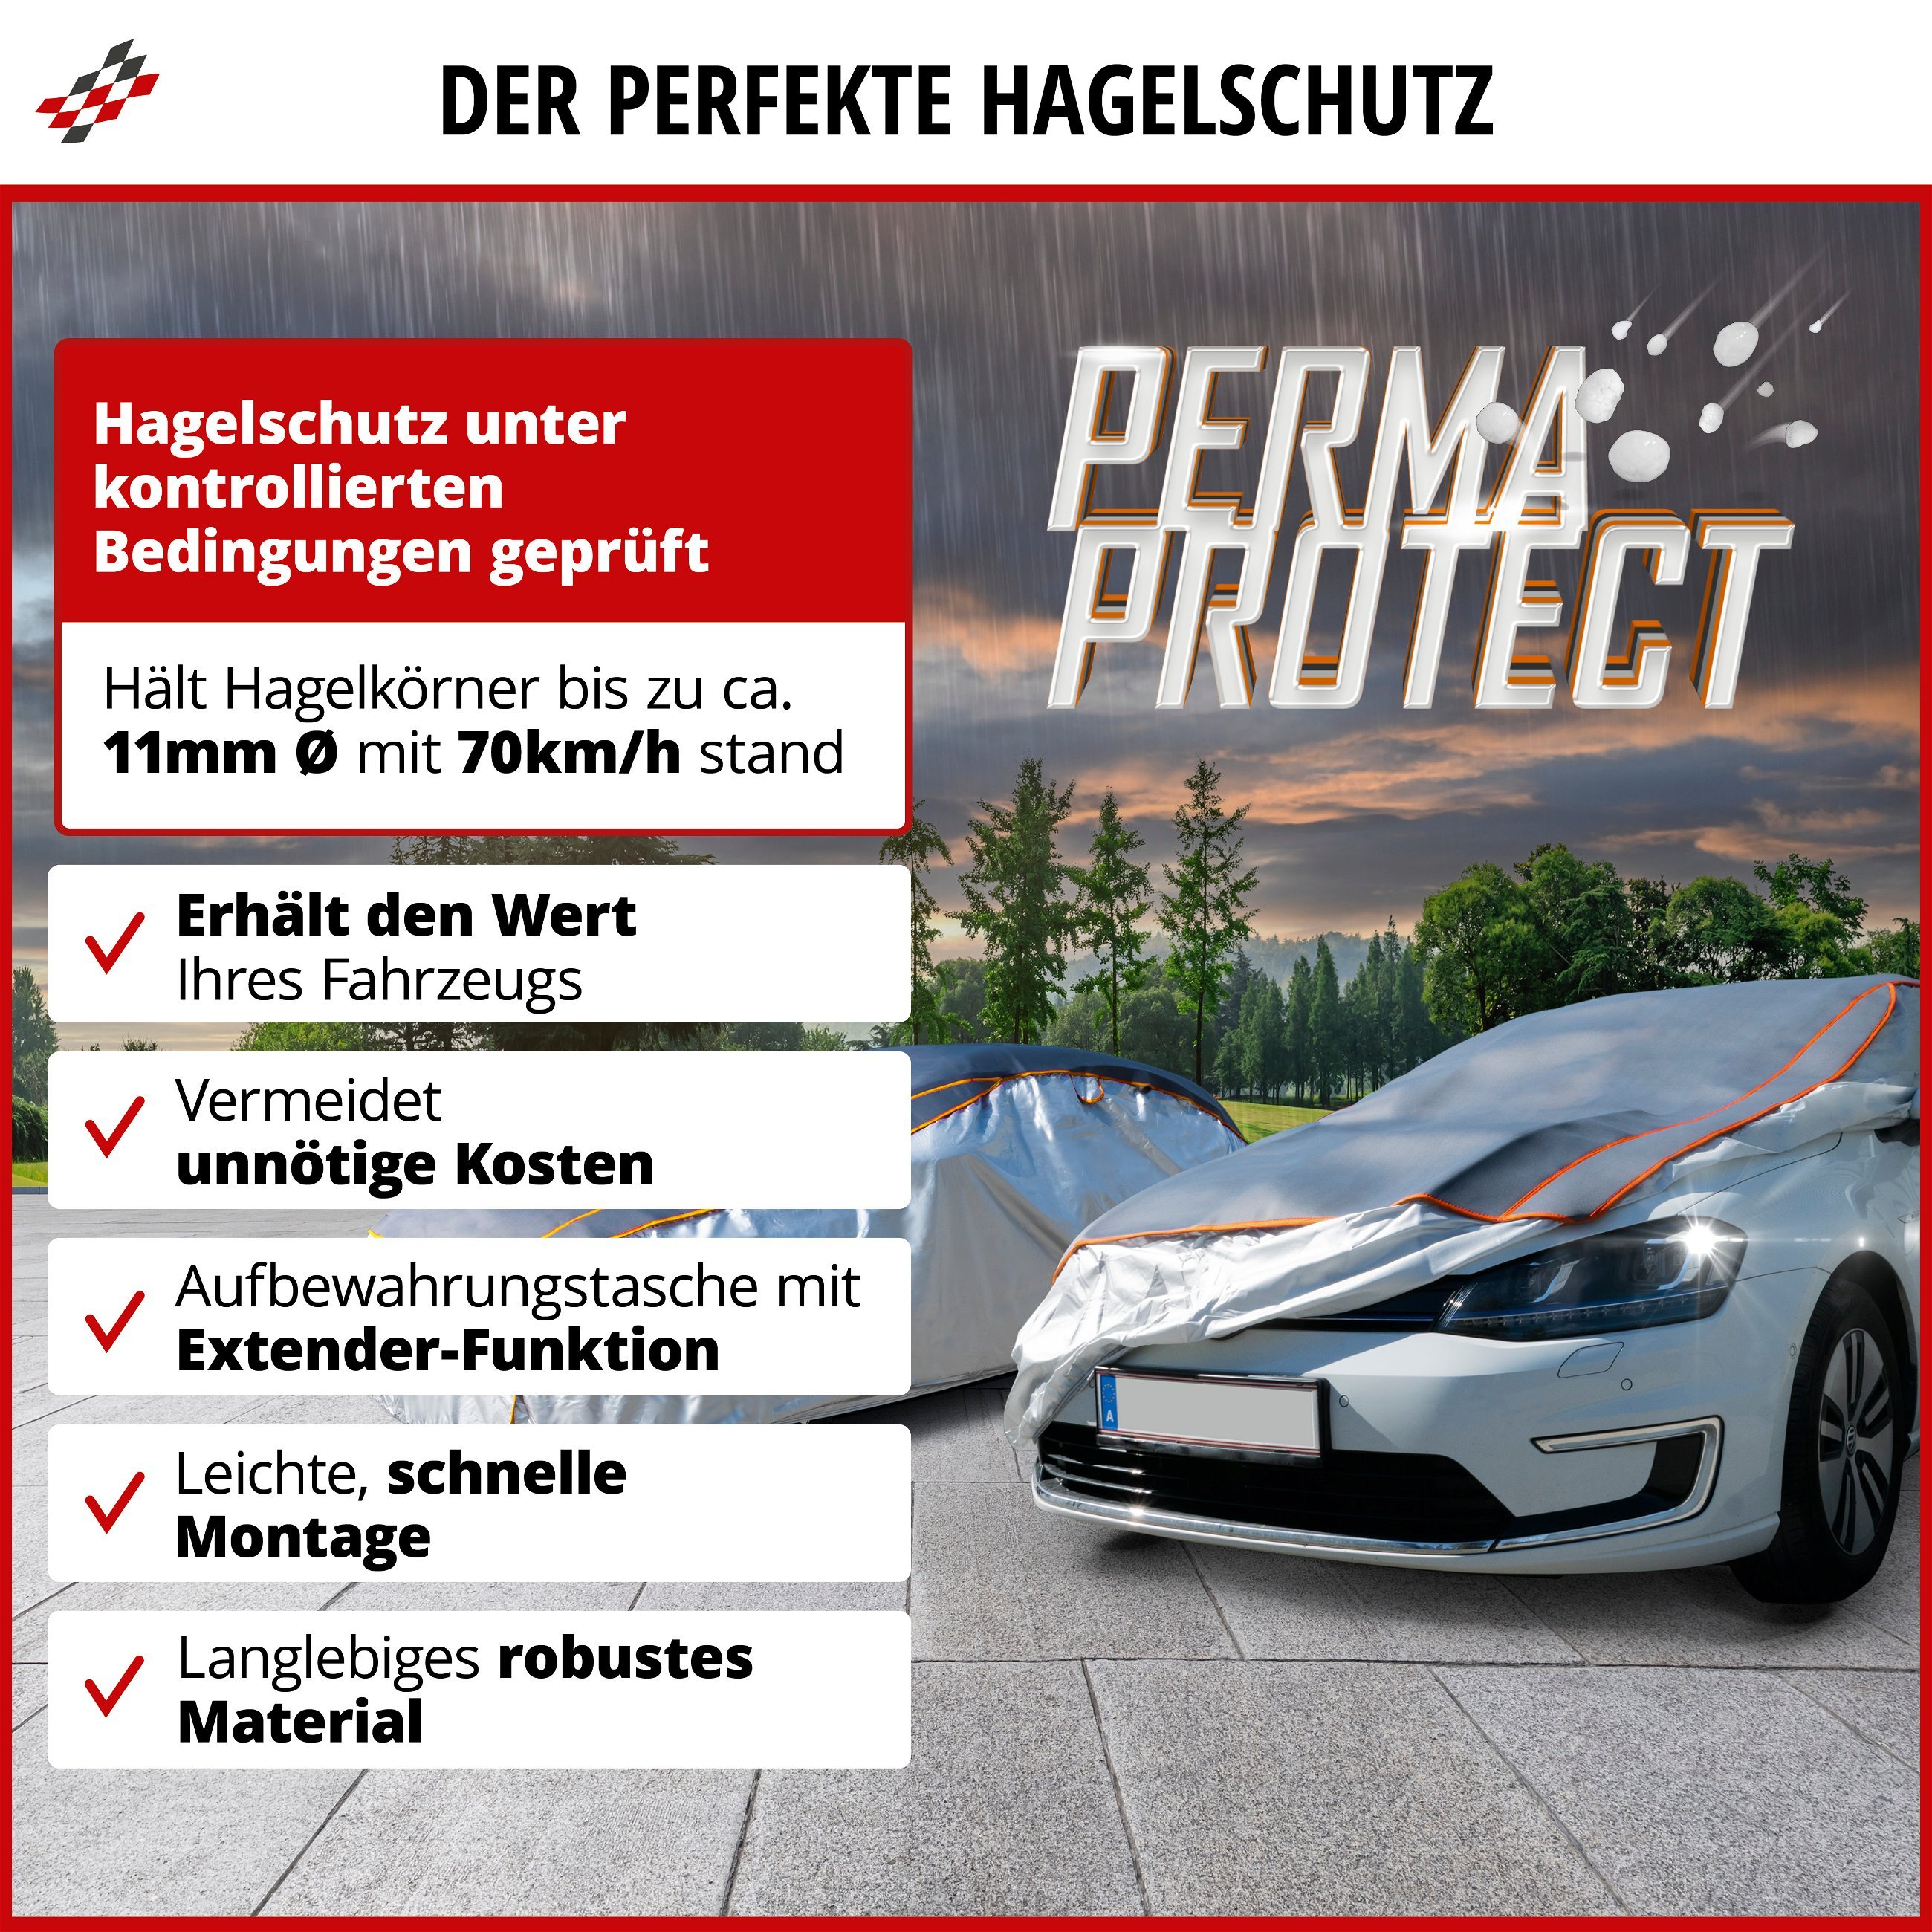 SUV Hagelschutzplane Perma Protect, Hagelschutzgarage Größe S